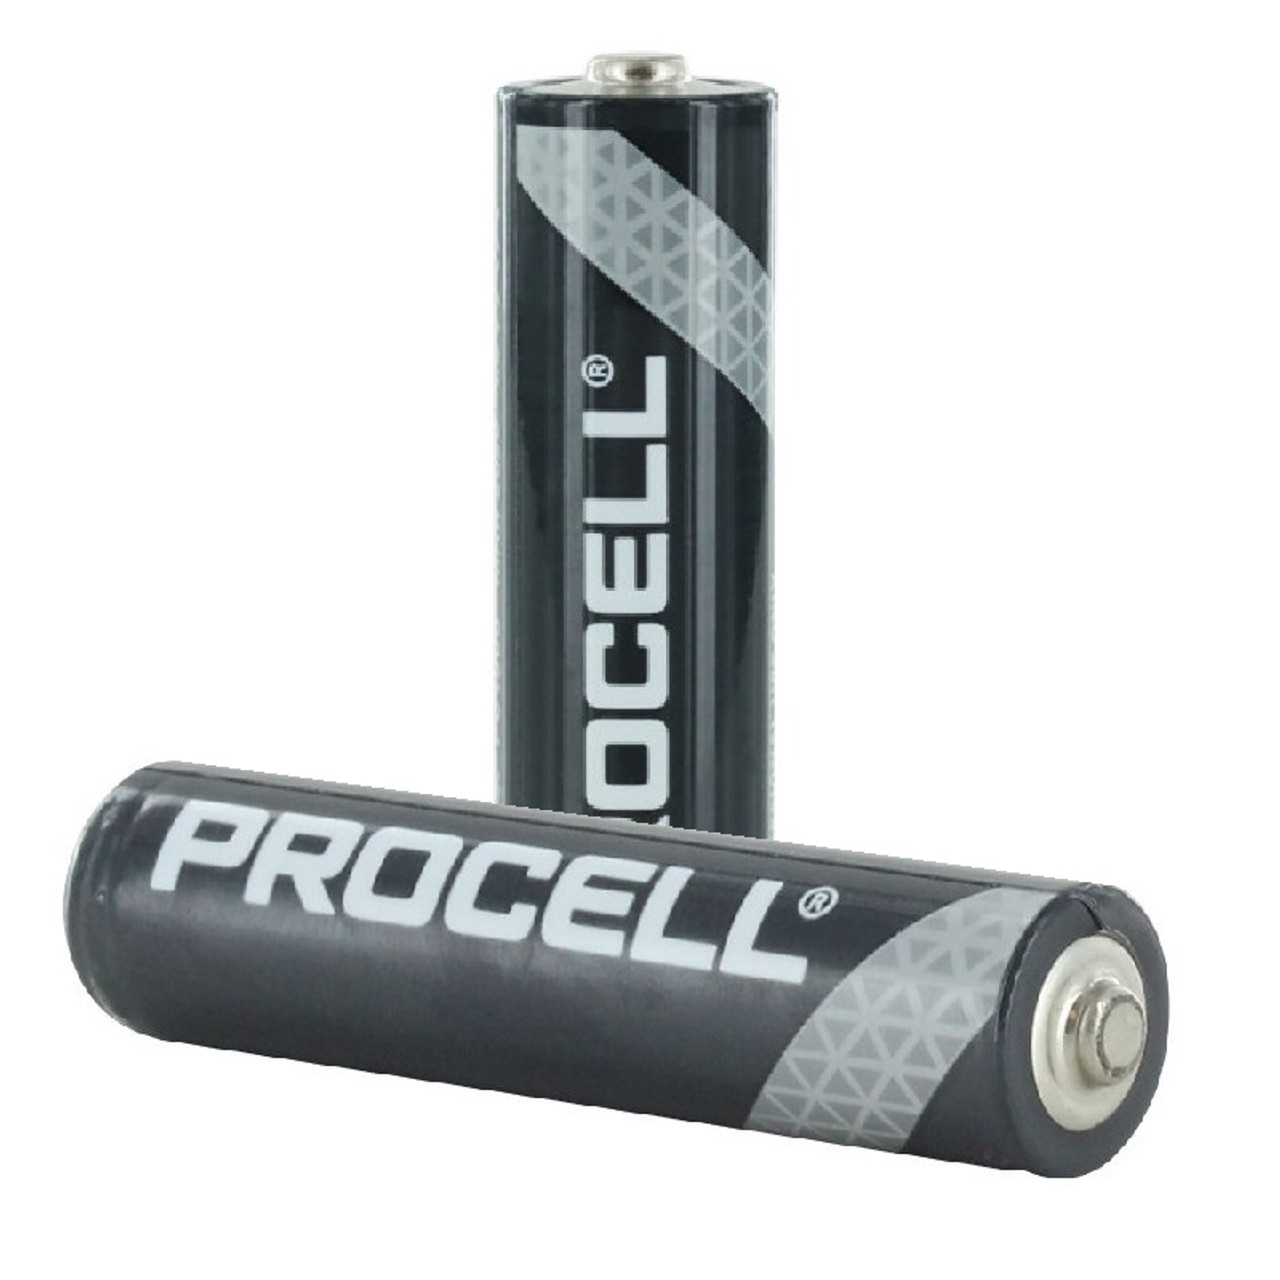  REACELL 24 pilas recargables AAA, baterías AAA